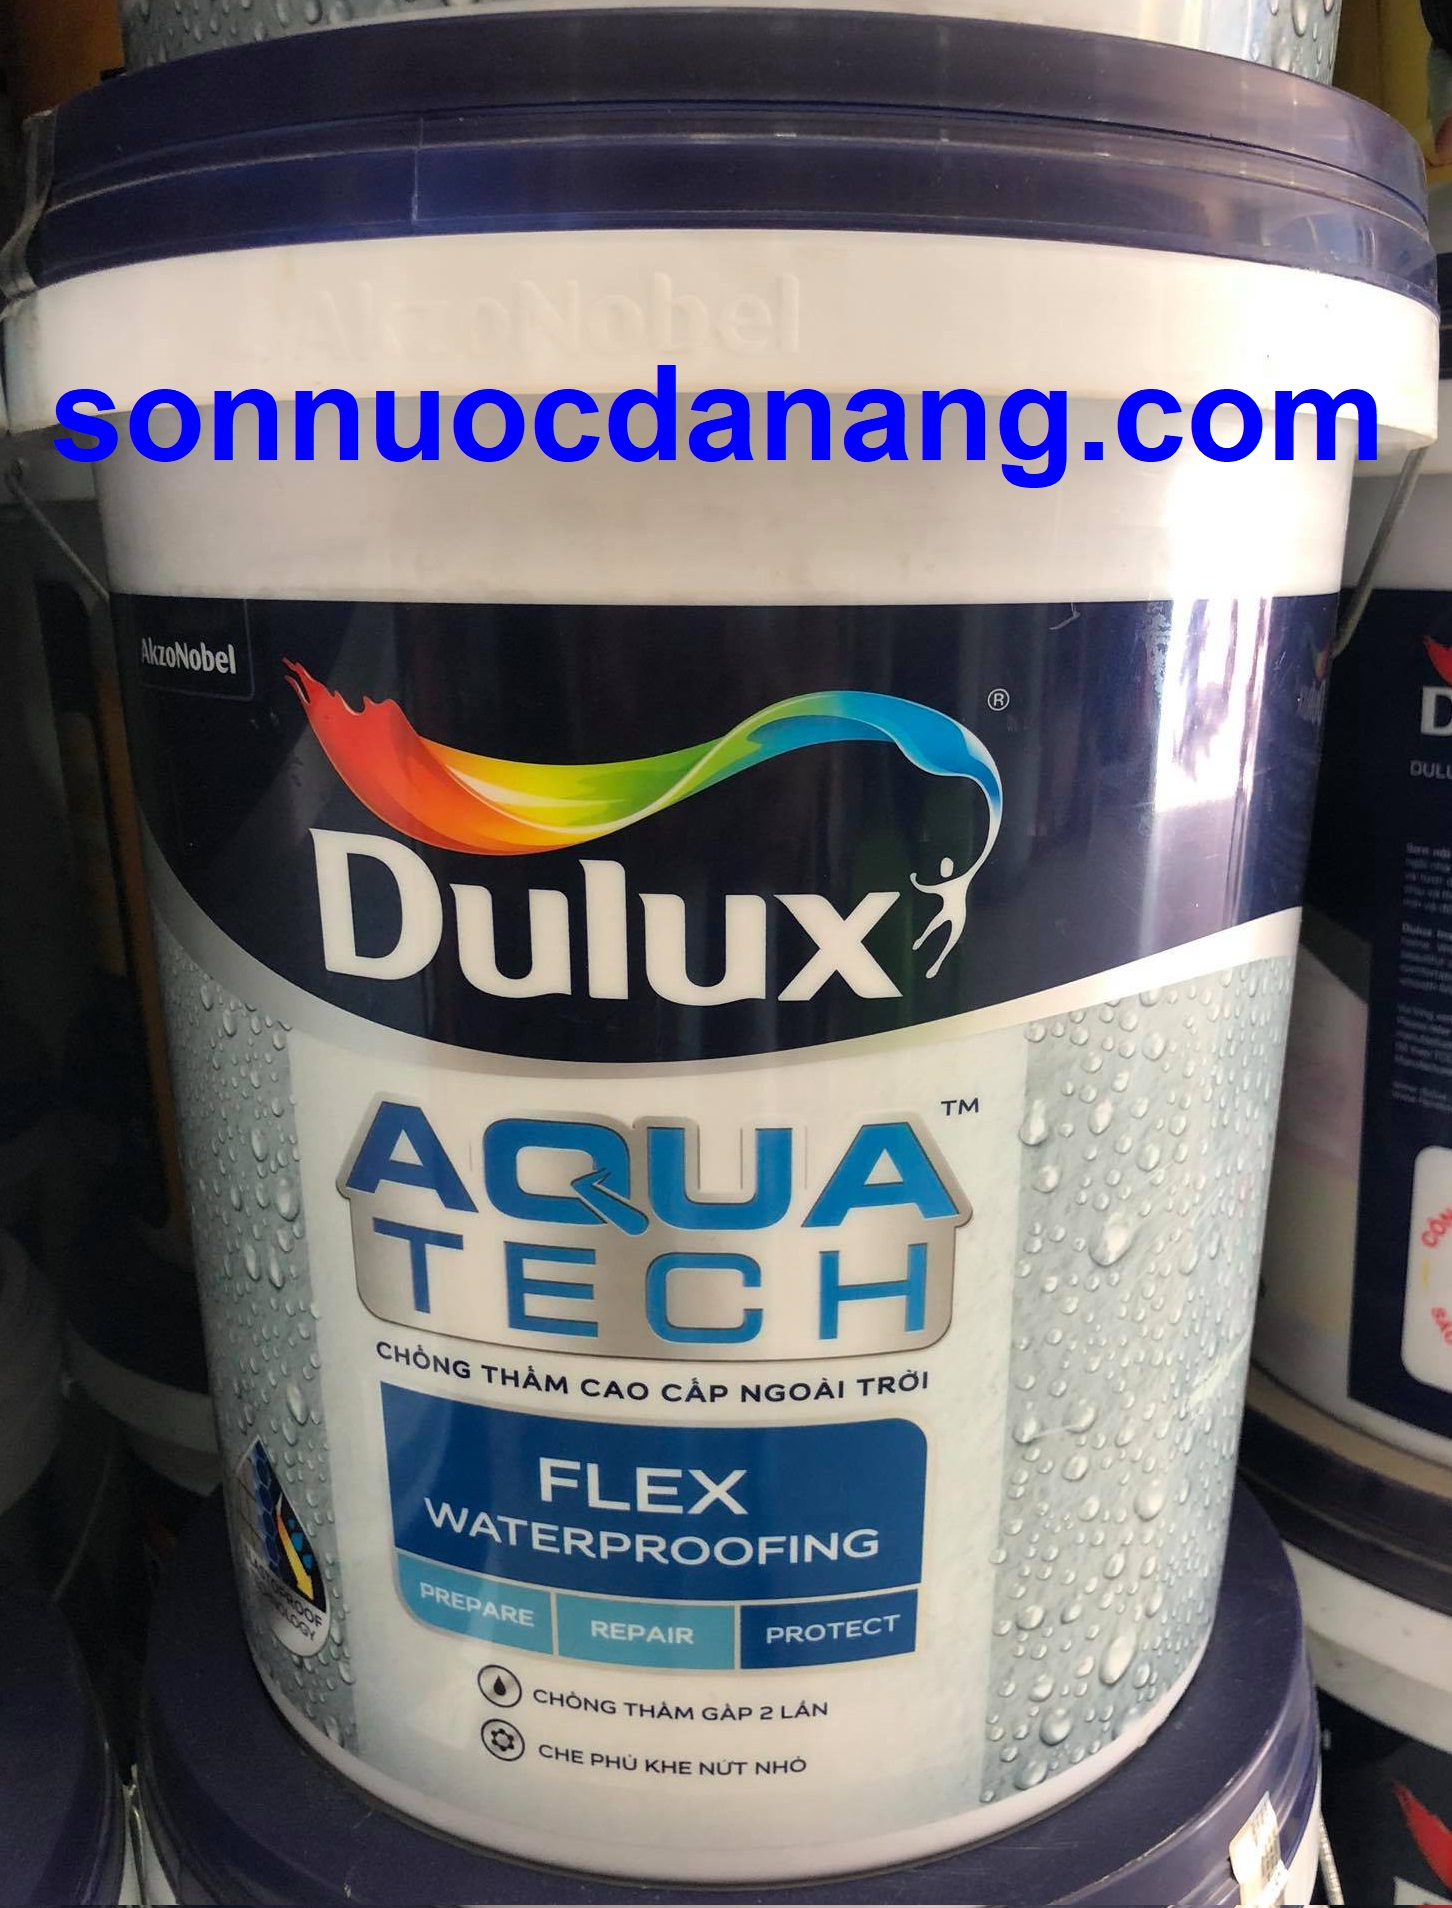 Sơn chống thấm Dulux Aquatech Flex Waterproofing có sẵn màu